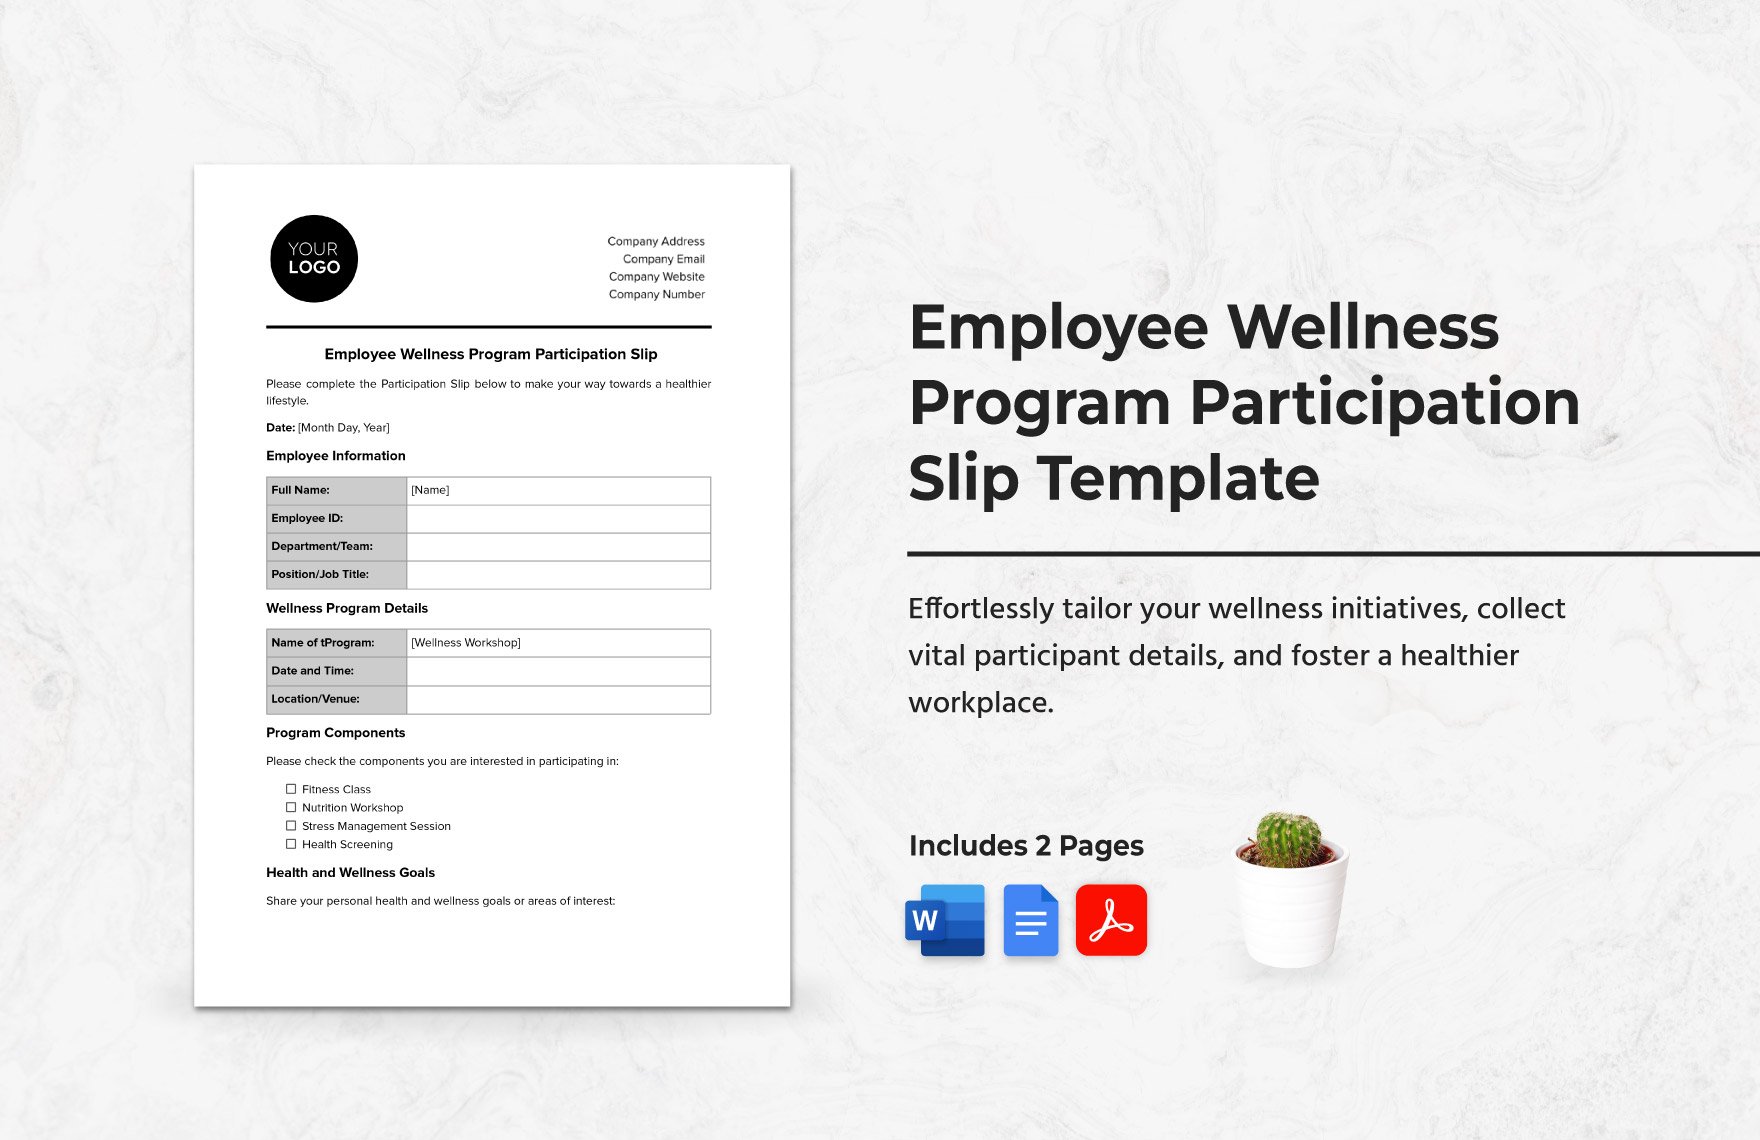 Employee Wellness Program Participation Slip Template